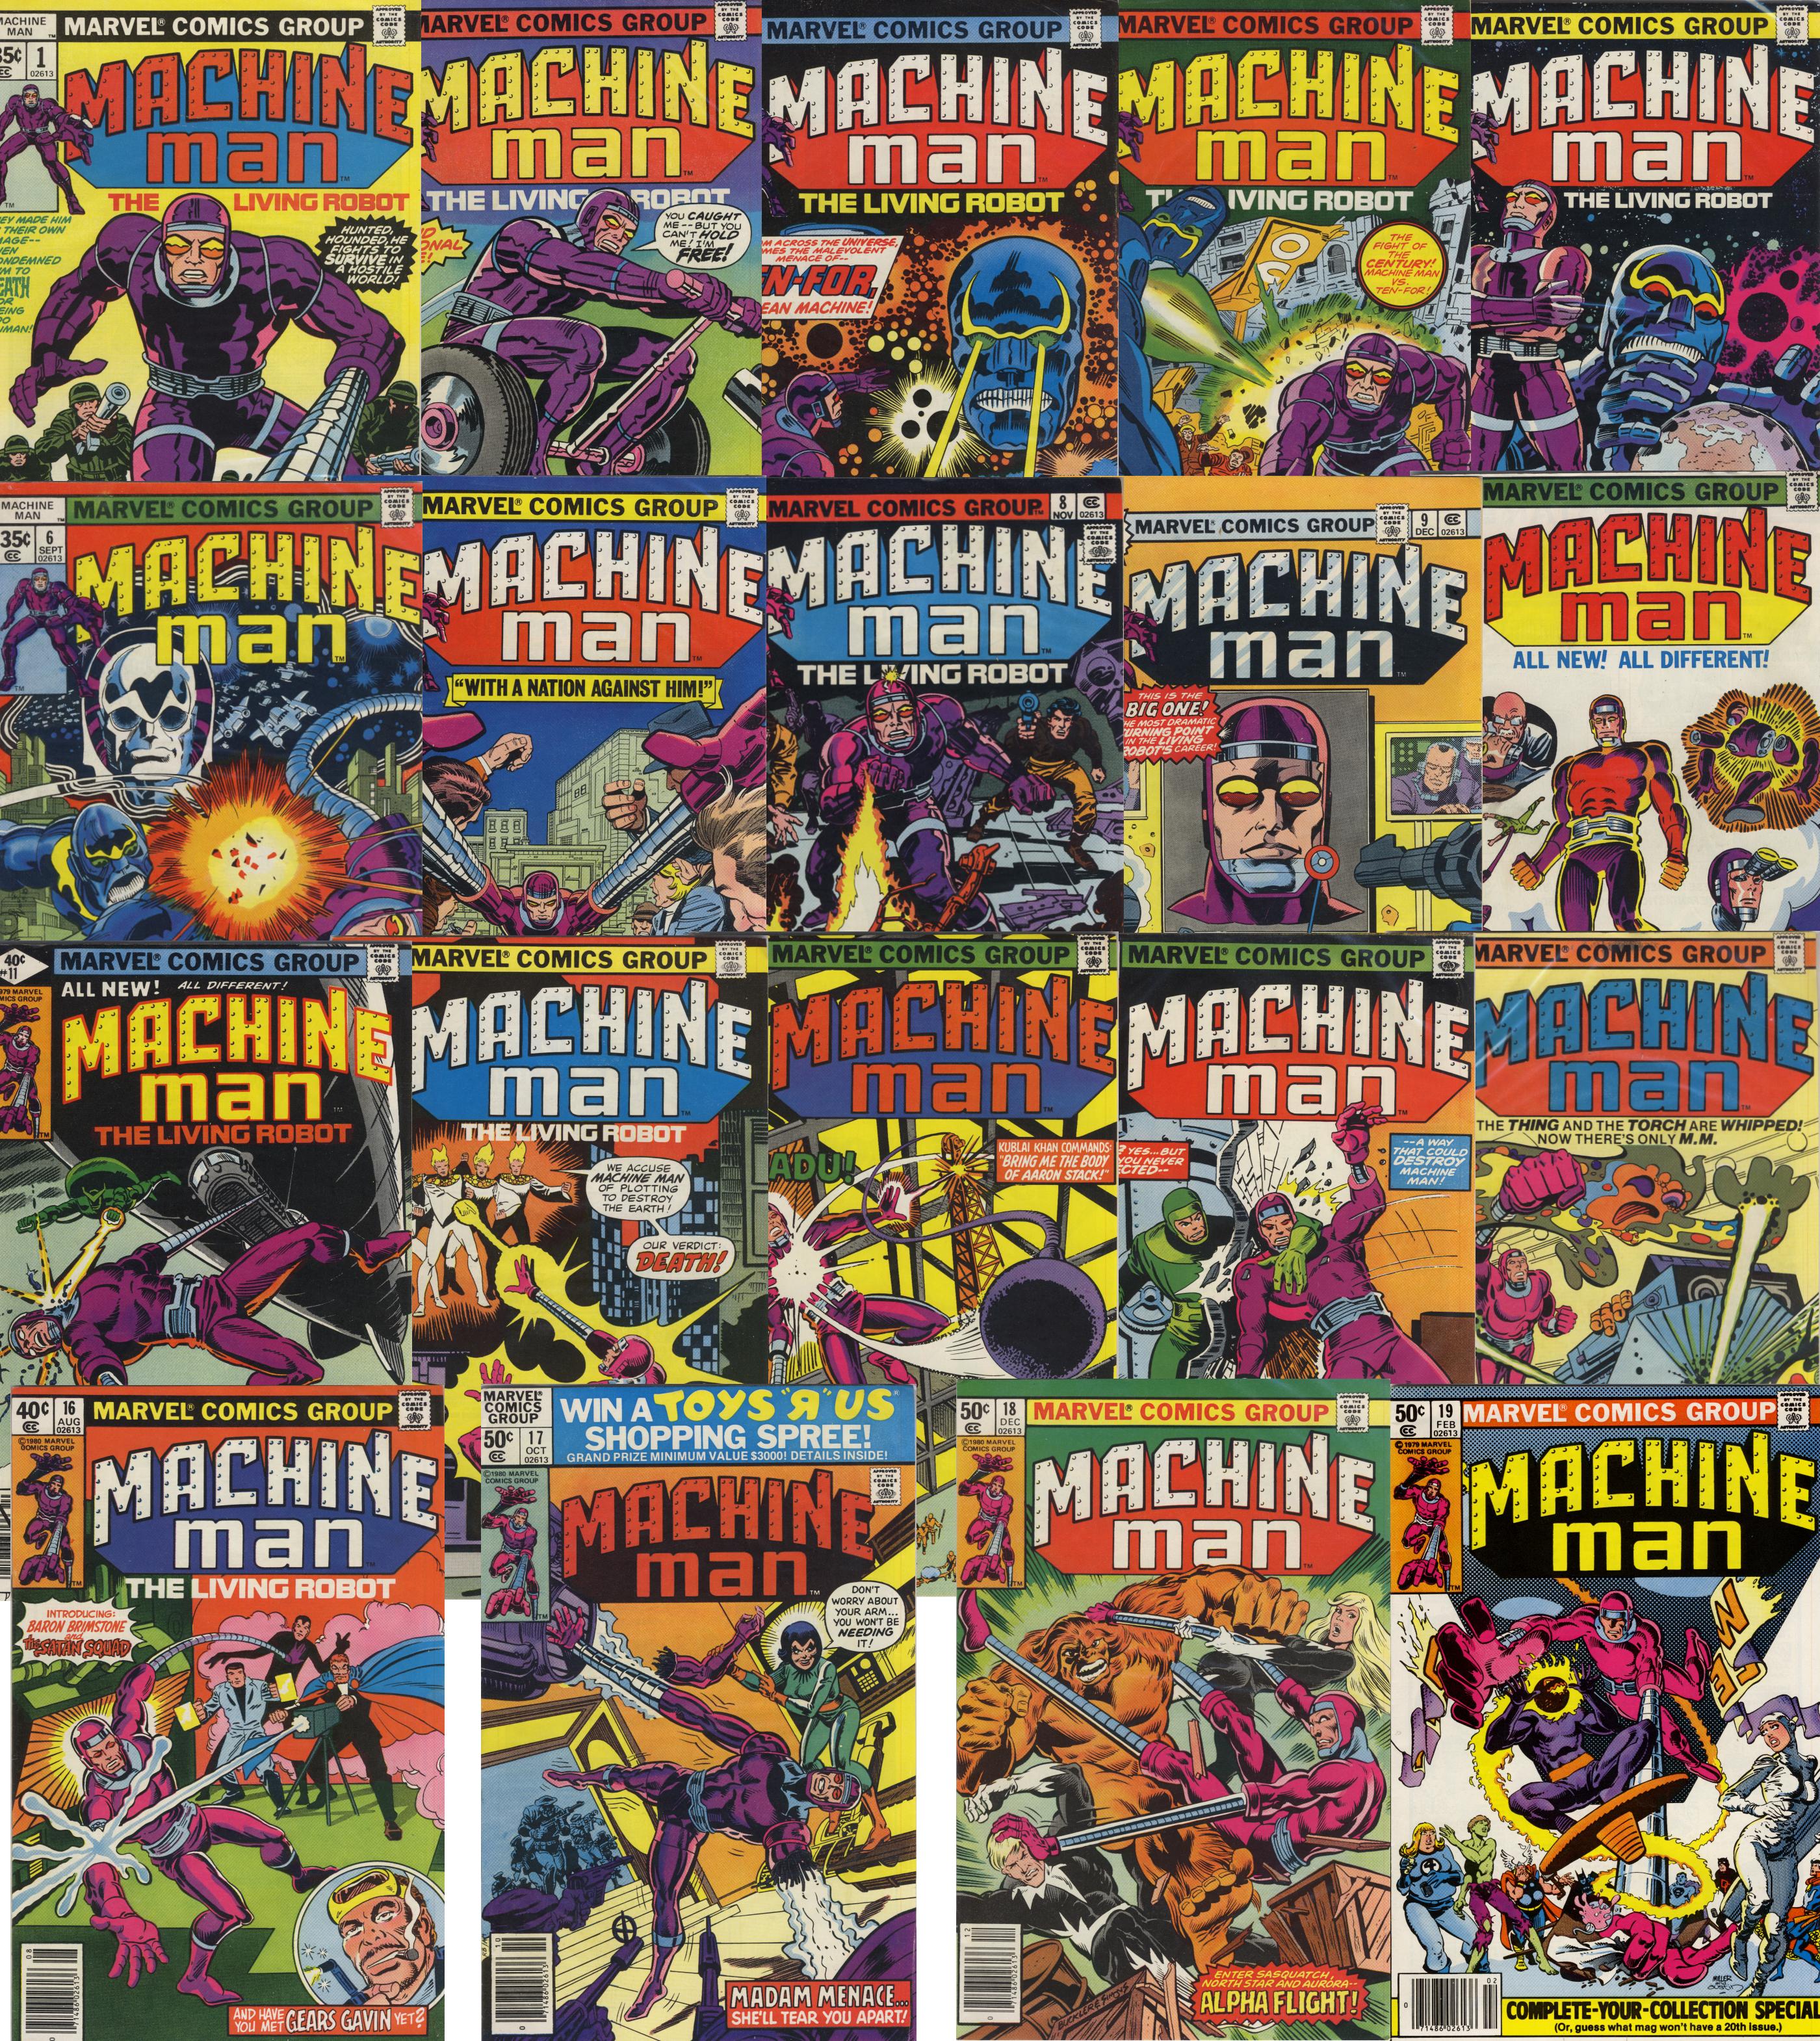 MachineMan #5